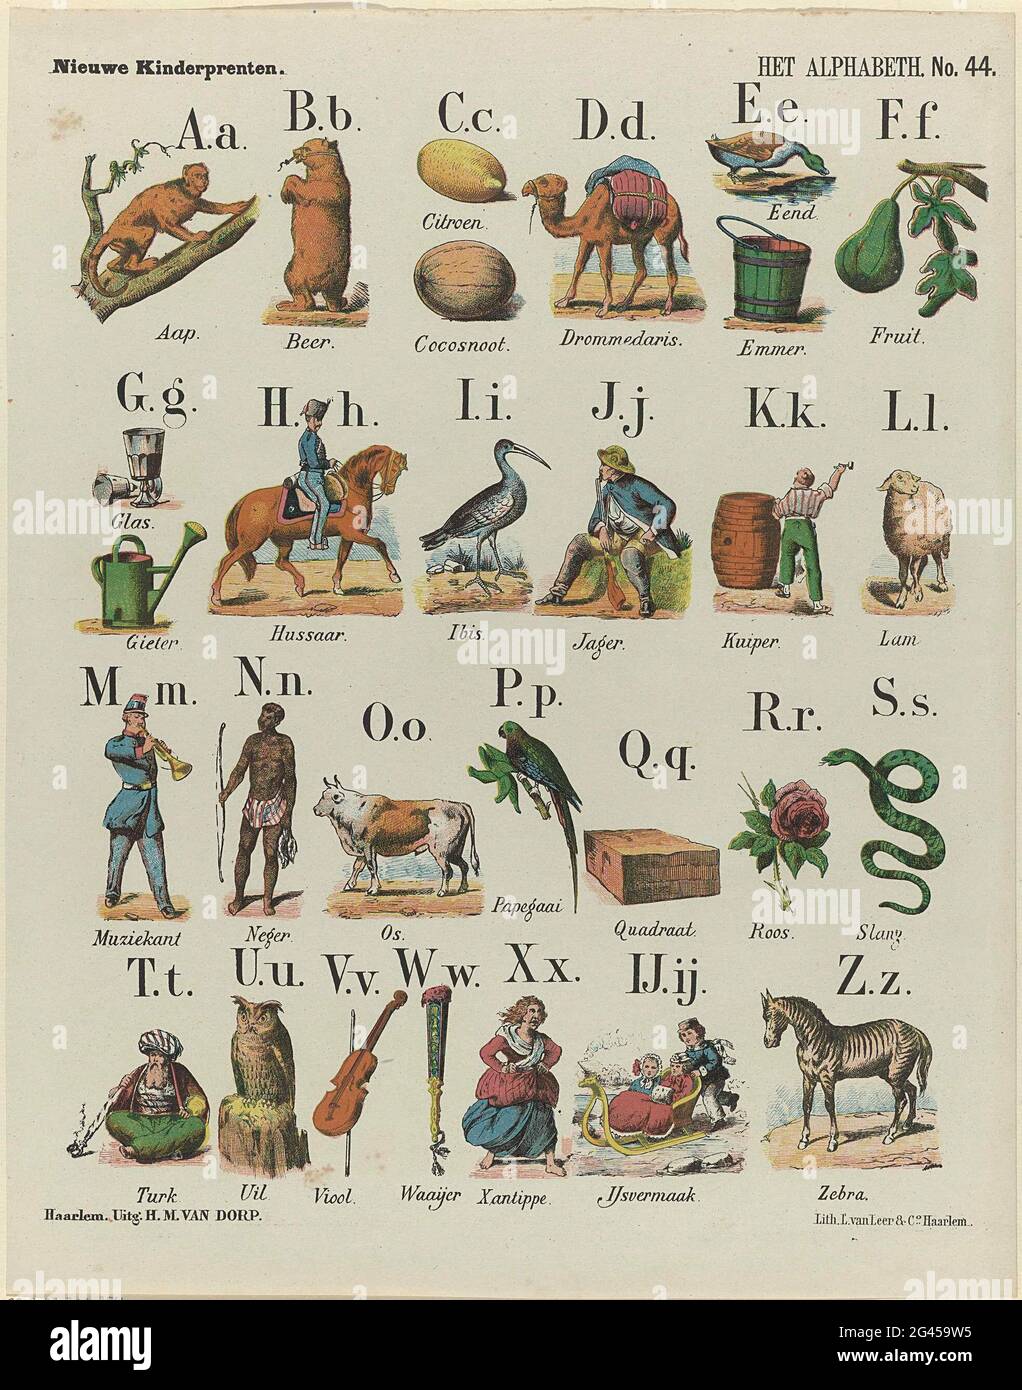 L'Alphabeth; stampe di nuovi bambini. Foglia con 29 rappresentazioni delle  lettere dell'alfabeto illustrate con oggetti, animali e figure le cui  parole iniziano con la lettera corrispondente. Sotto ogni immagine una  didascalia. Numerato